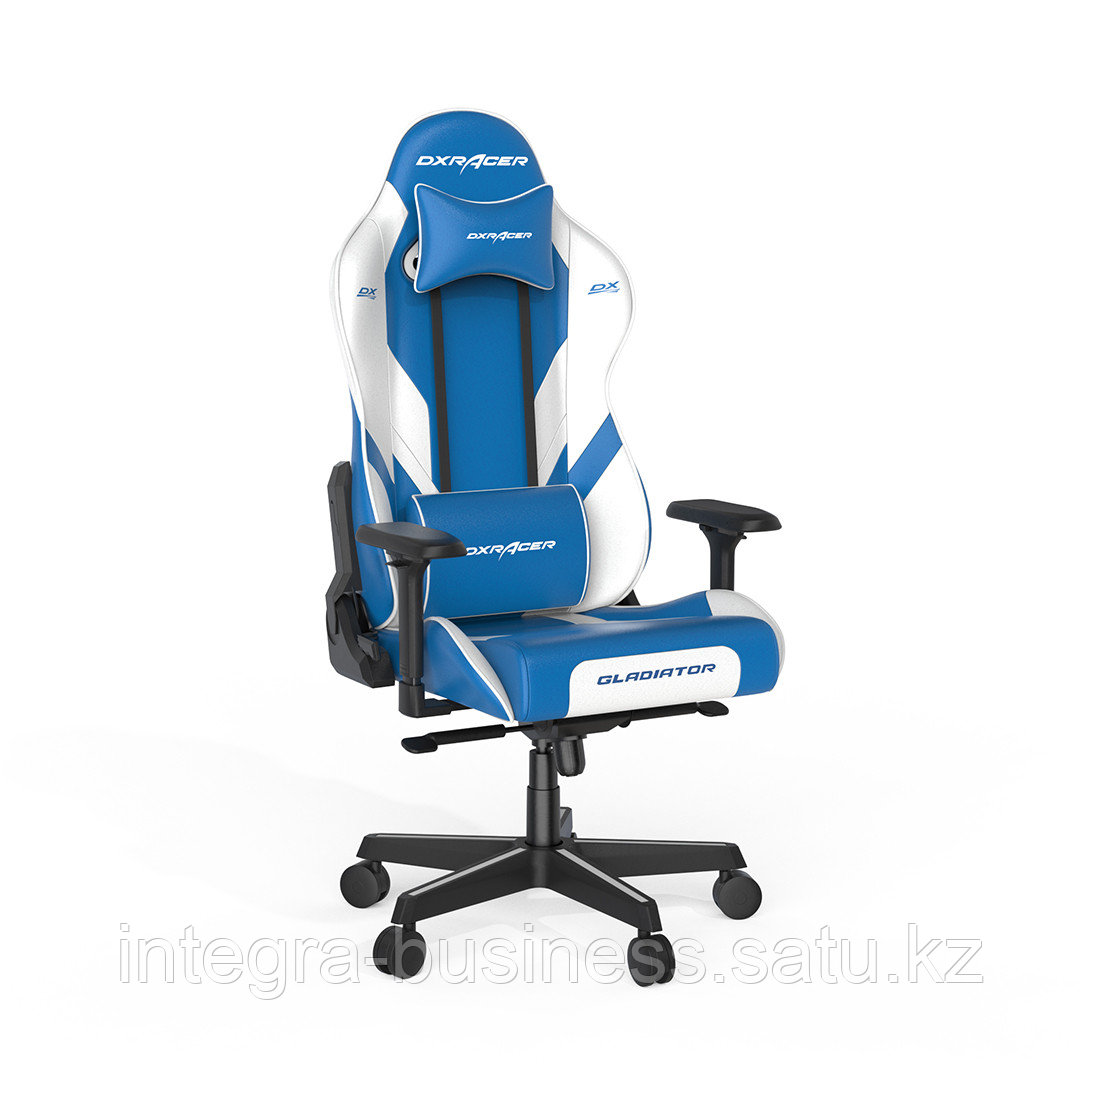 Игровое компьютерное кресло DX Racer GC/G001/BW, фото 1